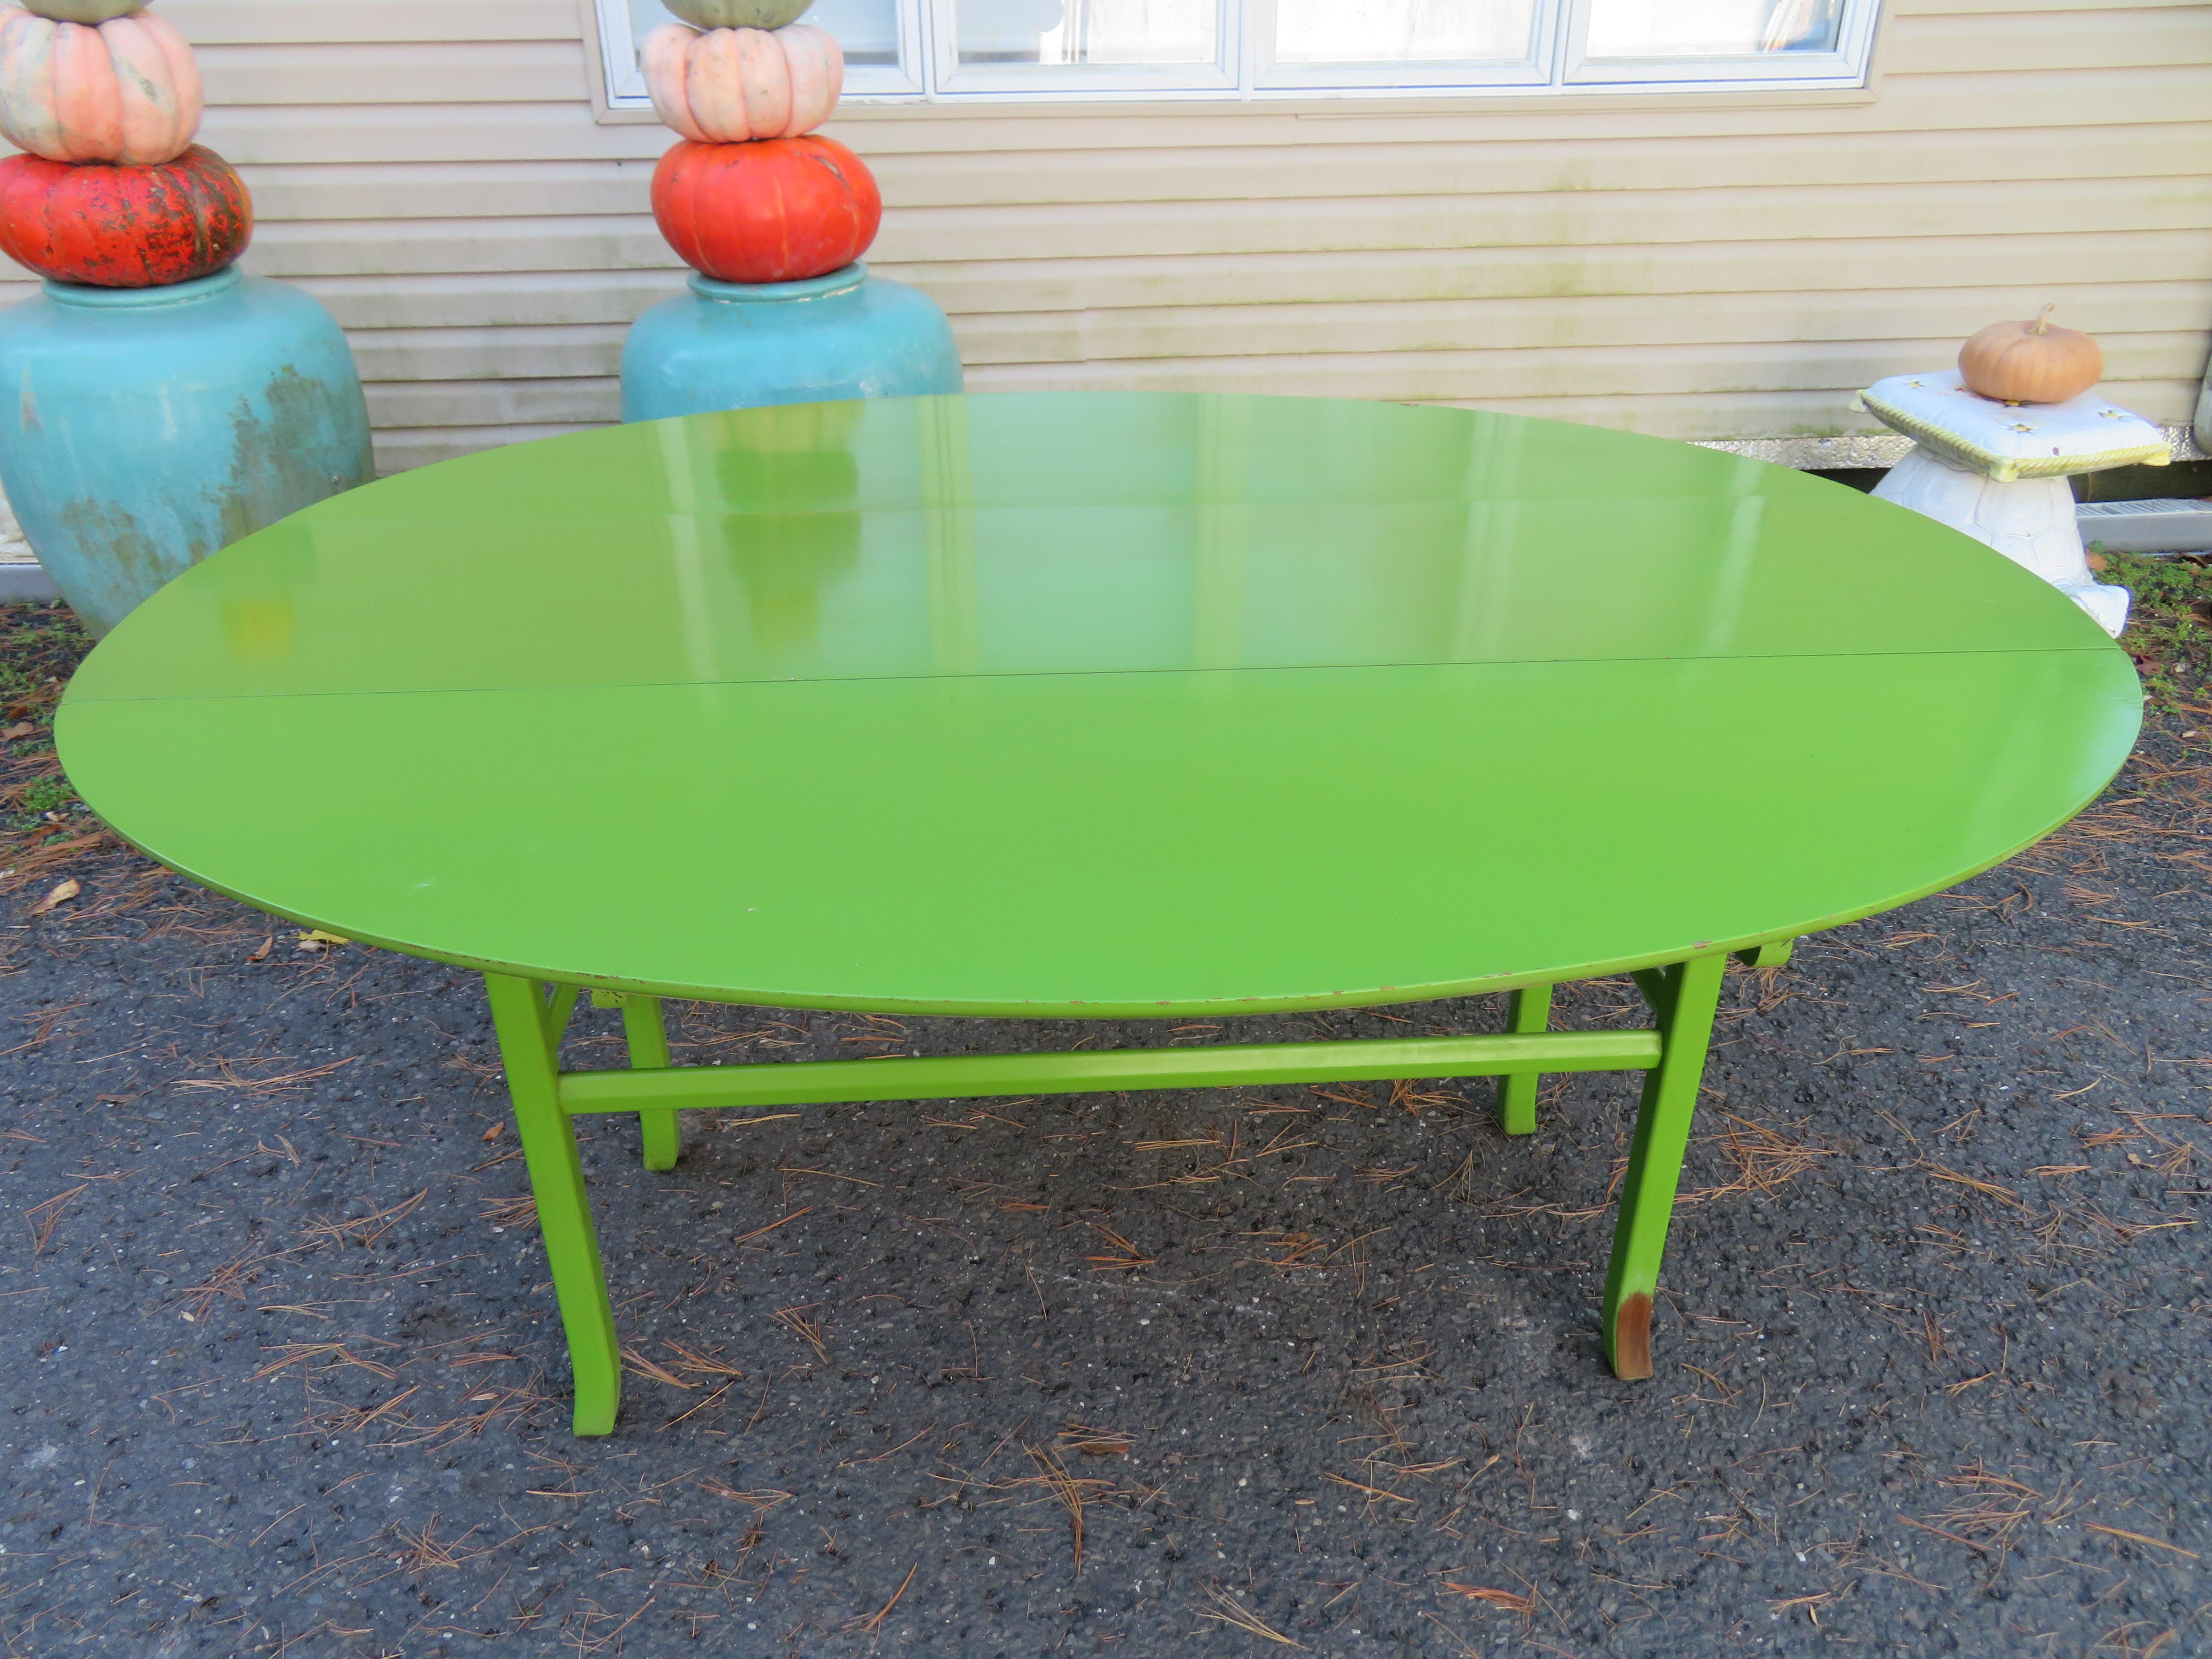 Fantastischer Konsolentisch in Pop-Farben aus der Mitte des letzten Jahrhunderts. Wir lieben alles an diesem lustigen und nützlichen Tisch, von der lindgrünen Farbe bis hin zu der Tatsache, dass dieser Tisch 2 Funktionen erfüllen kann. Er kann